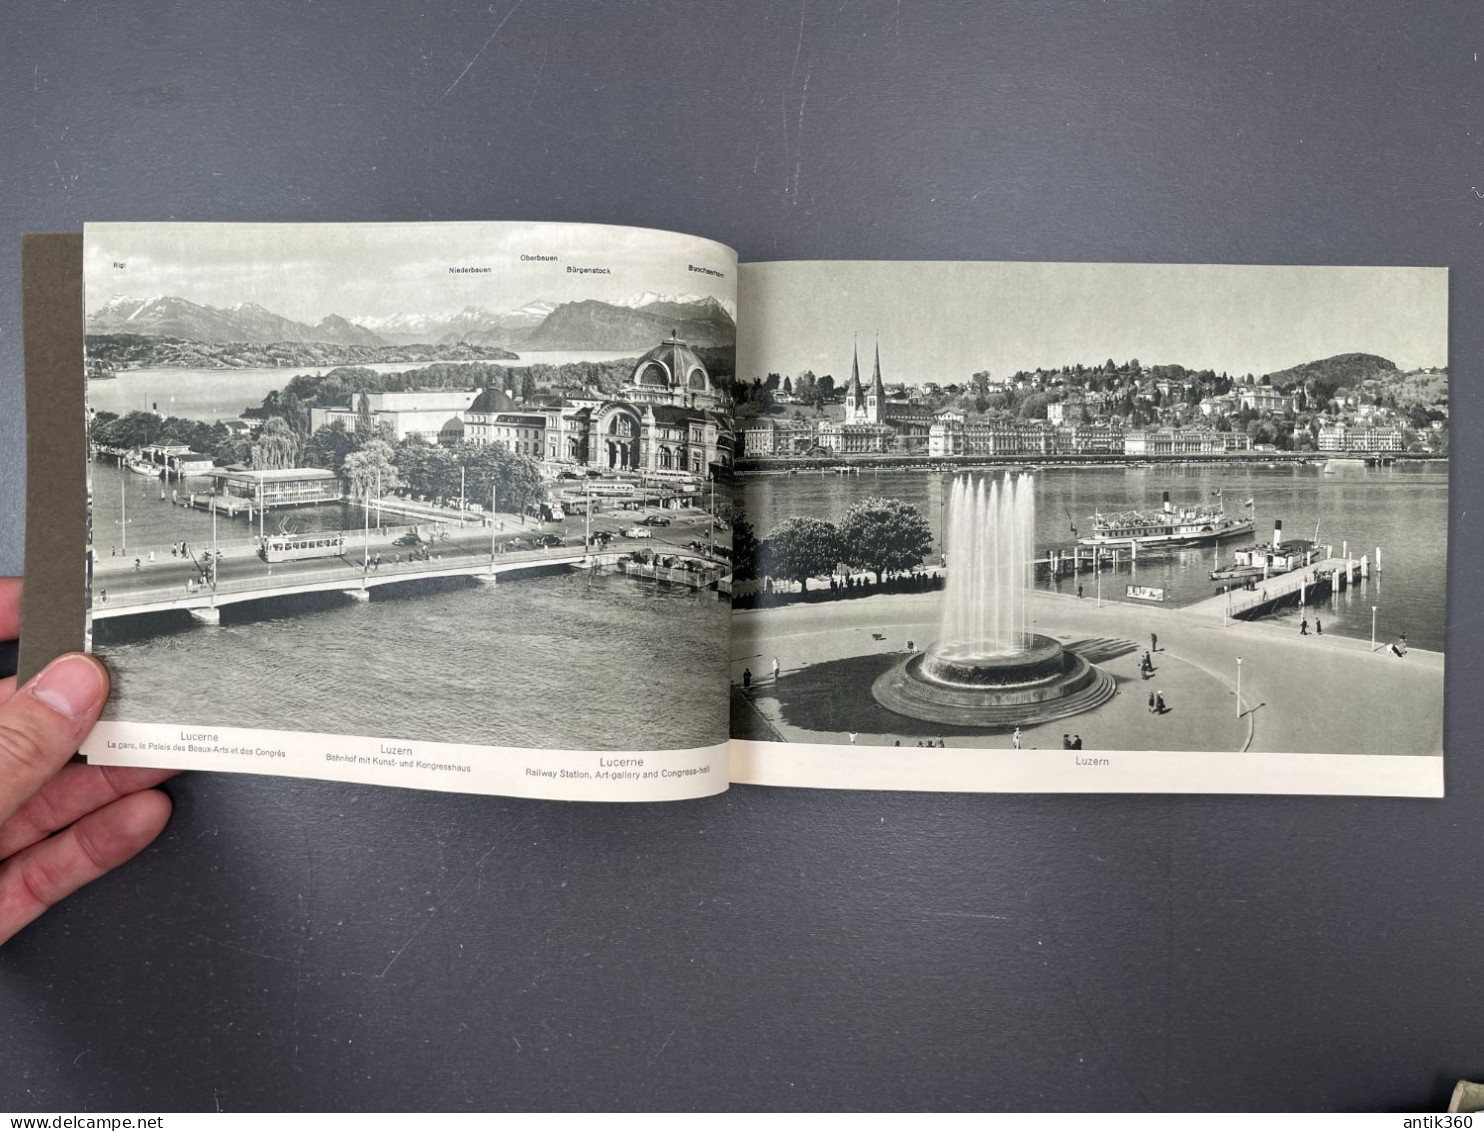 Ancienne Brochure Touristique 42 Vues / Photos VIERWALDSTÄTTERSEE LAC DES QUATRES CANTONS LAKE OF LUCERNE Suisse